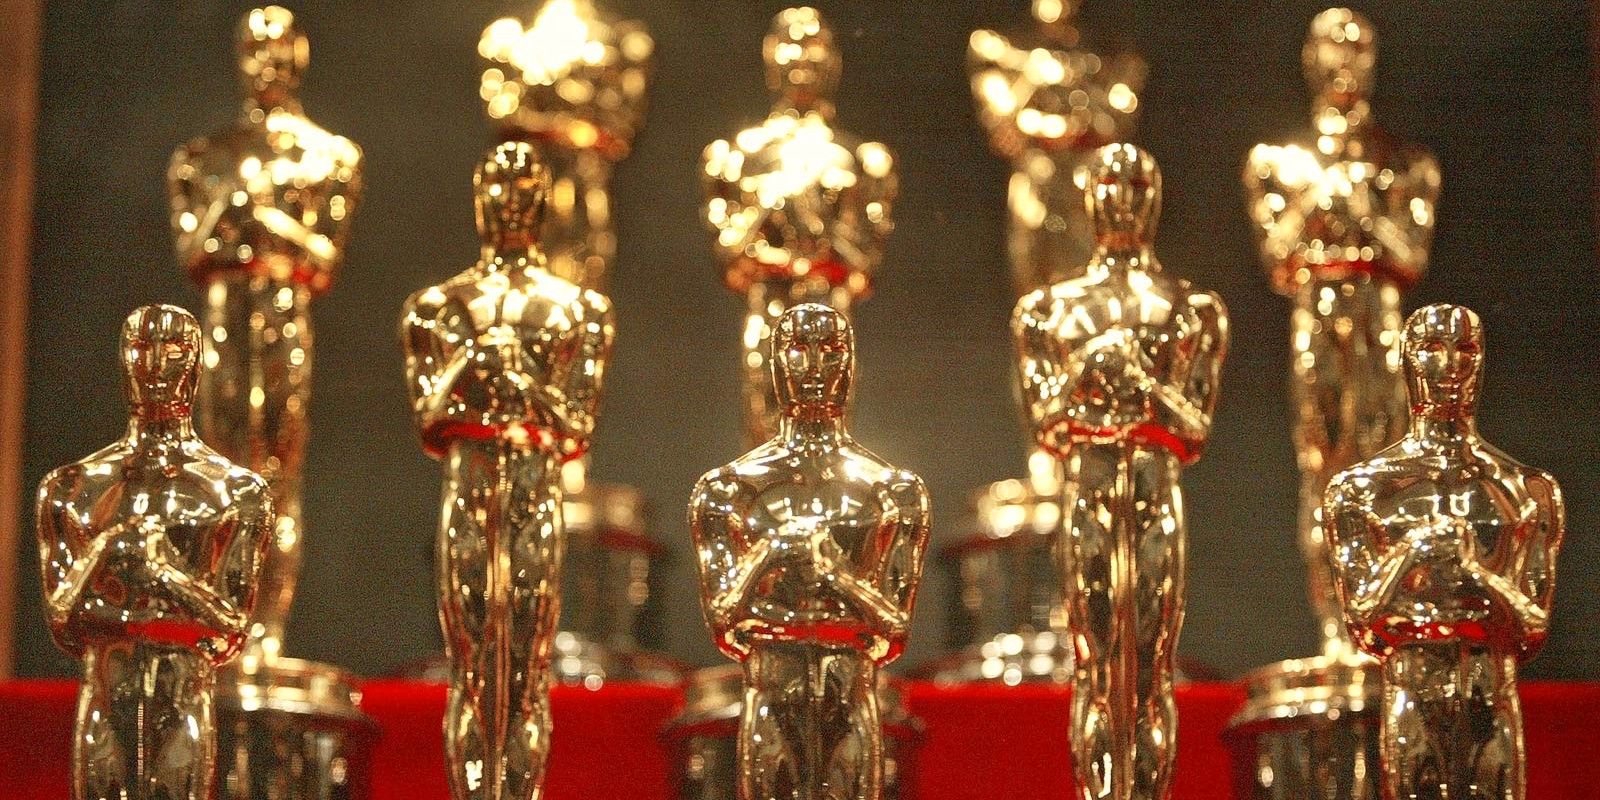 Los directores de Dune y Power of The Dog están molestos por la eliminación de categorías en los Oscar 2022